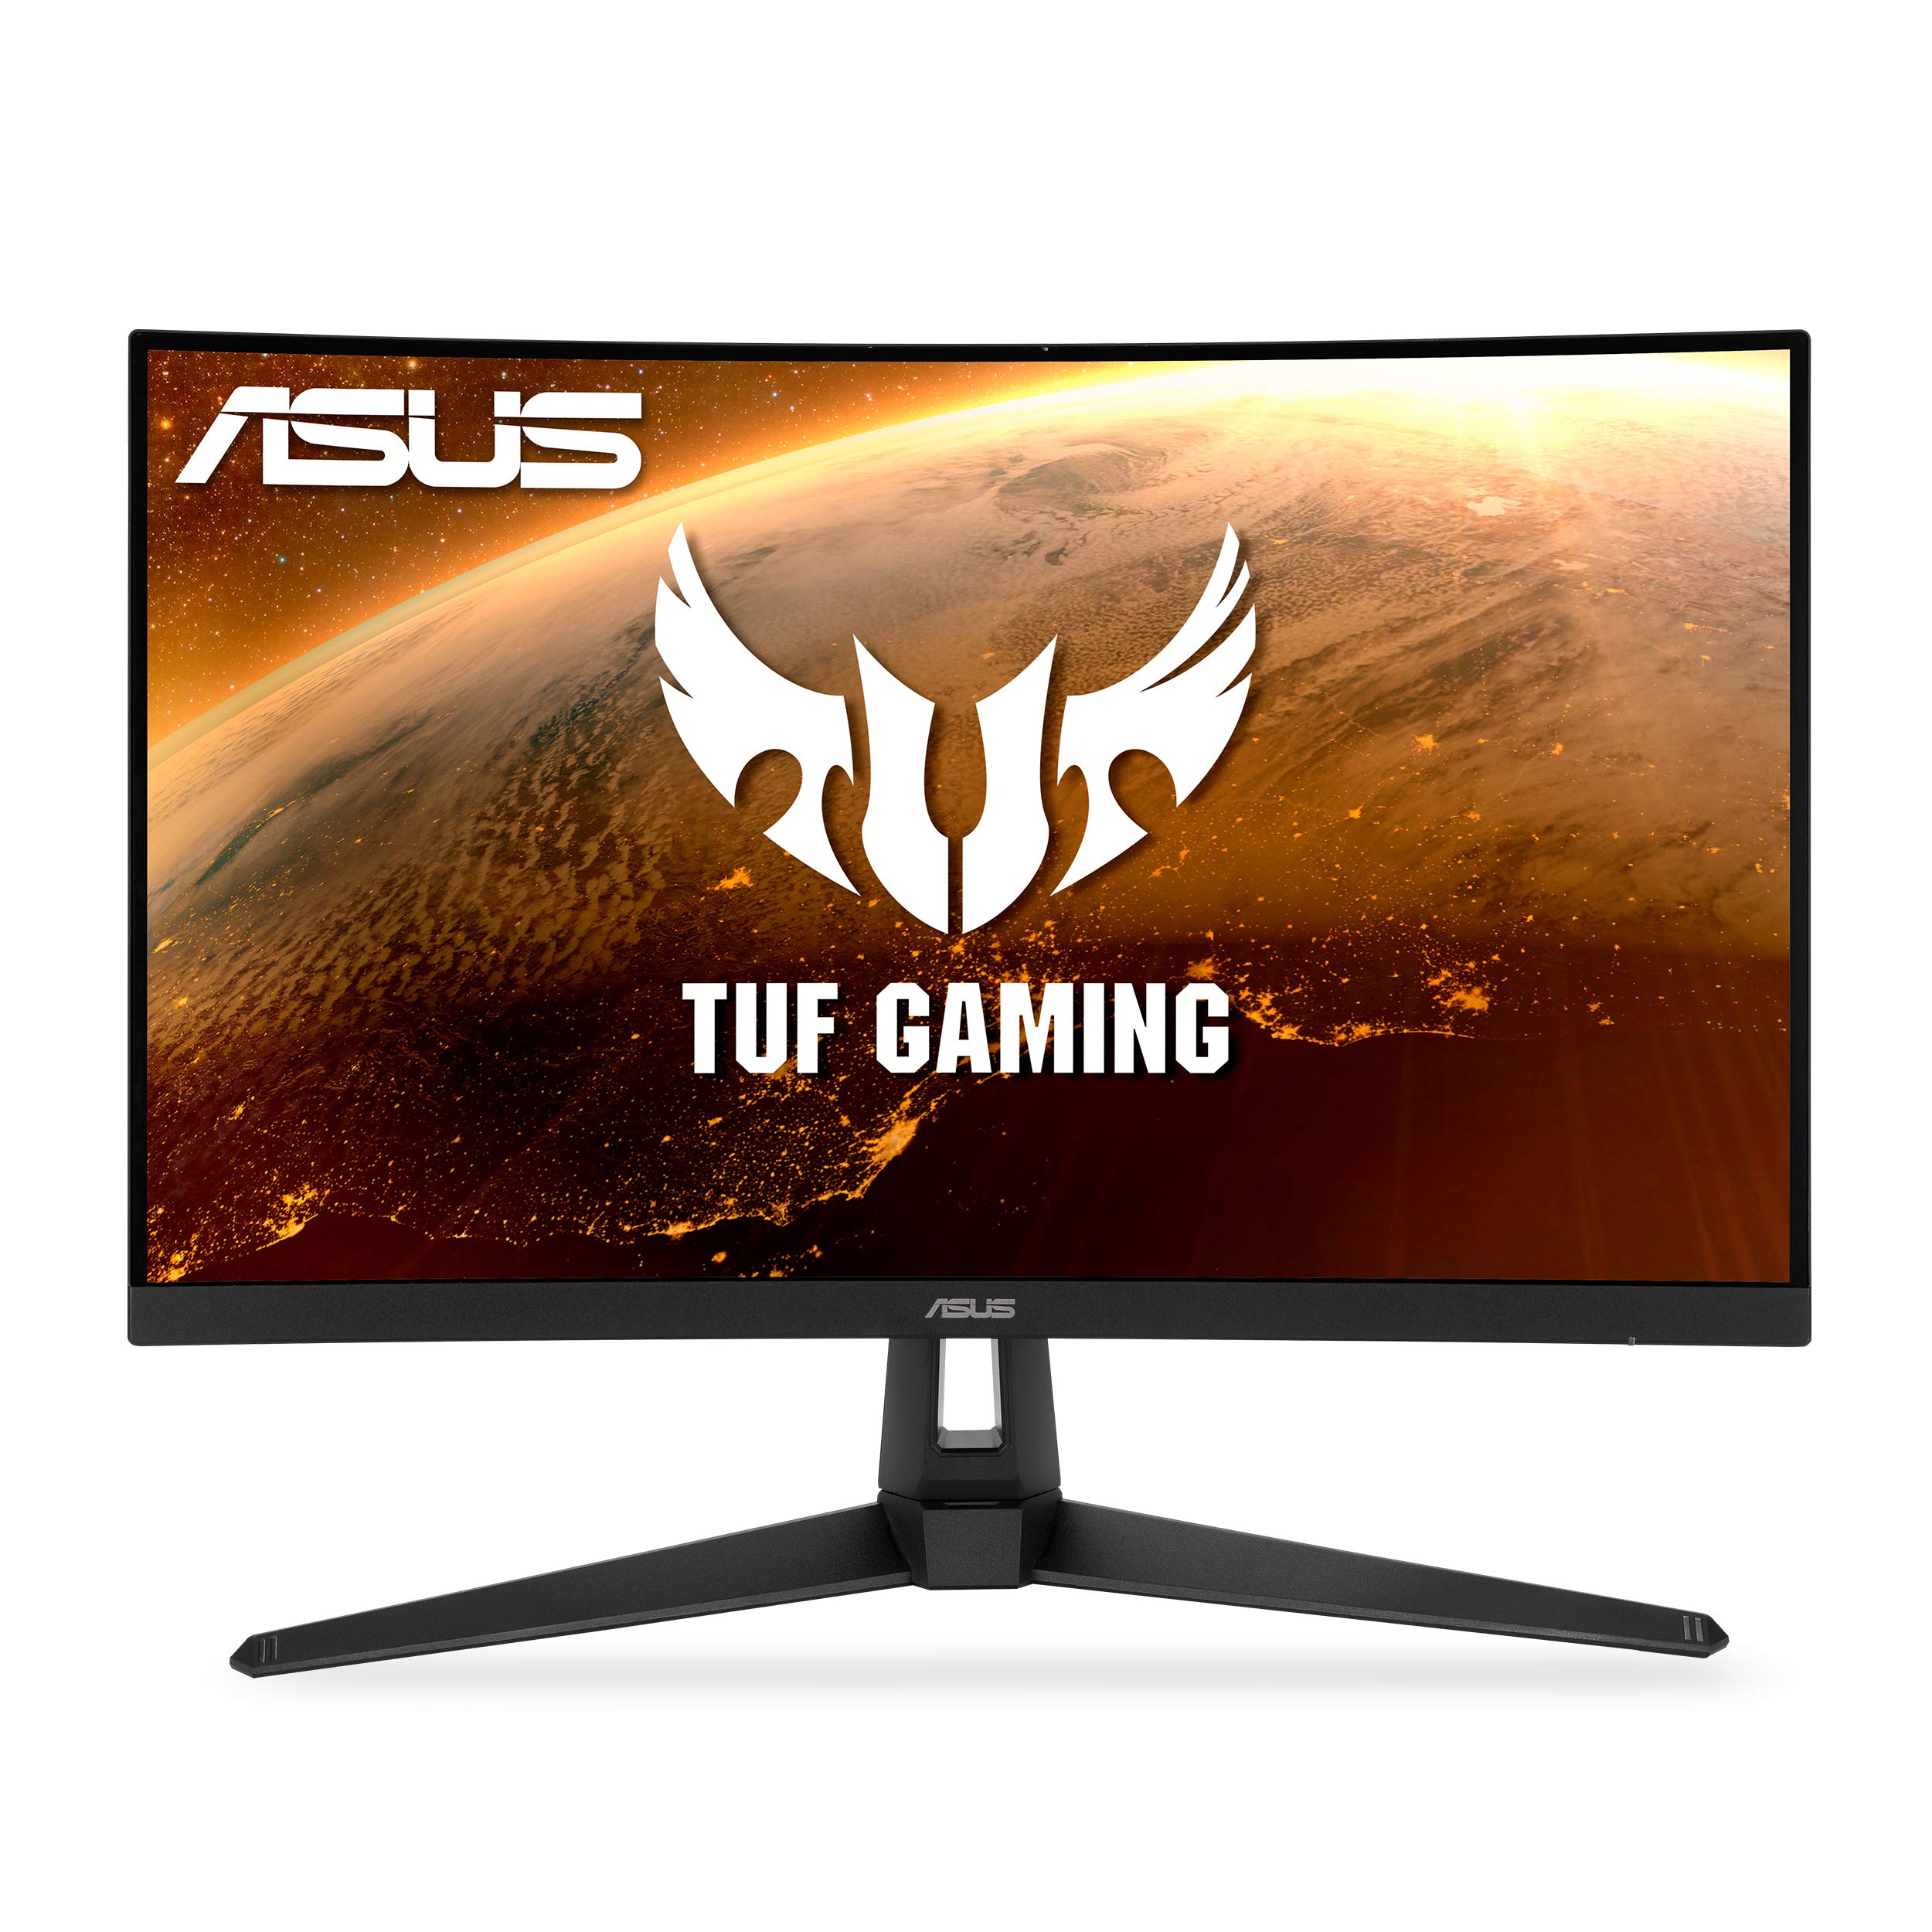 Asus TUF Gaming 27” Gaming Monitor